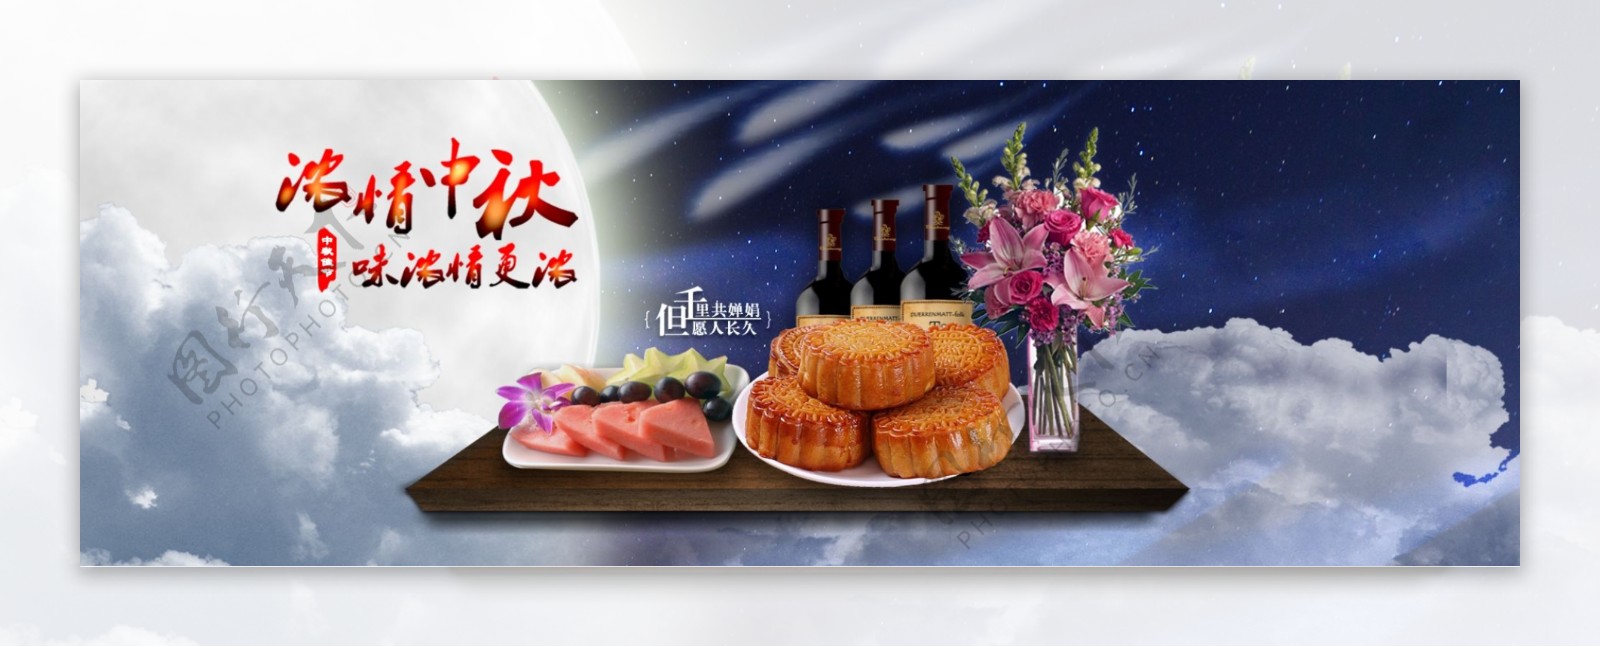 淘宝中秋月饼促销海报设计PSD素材